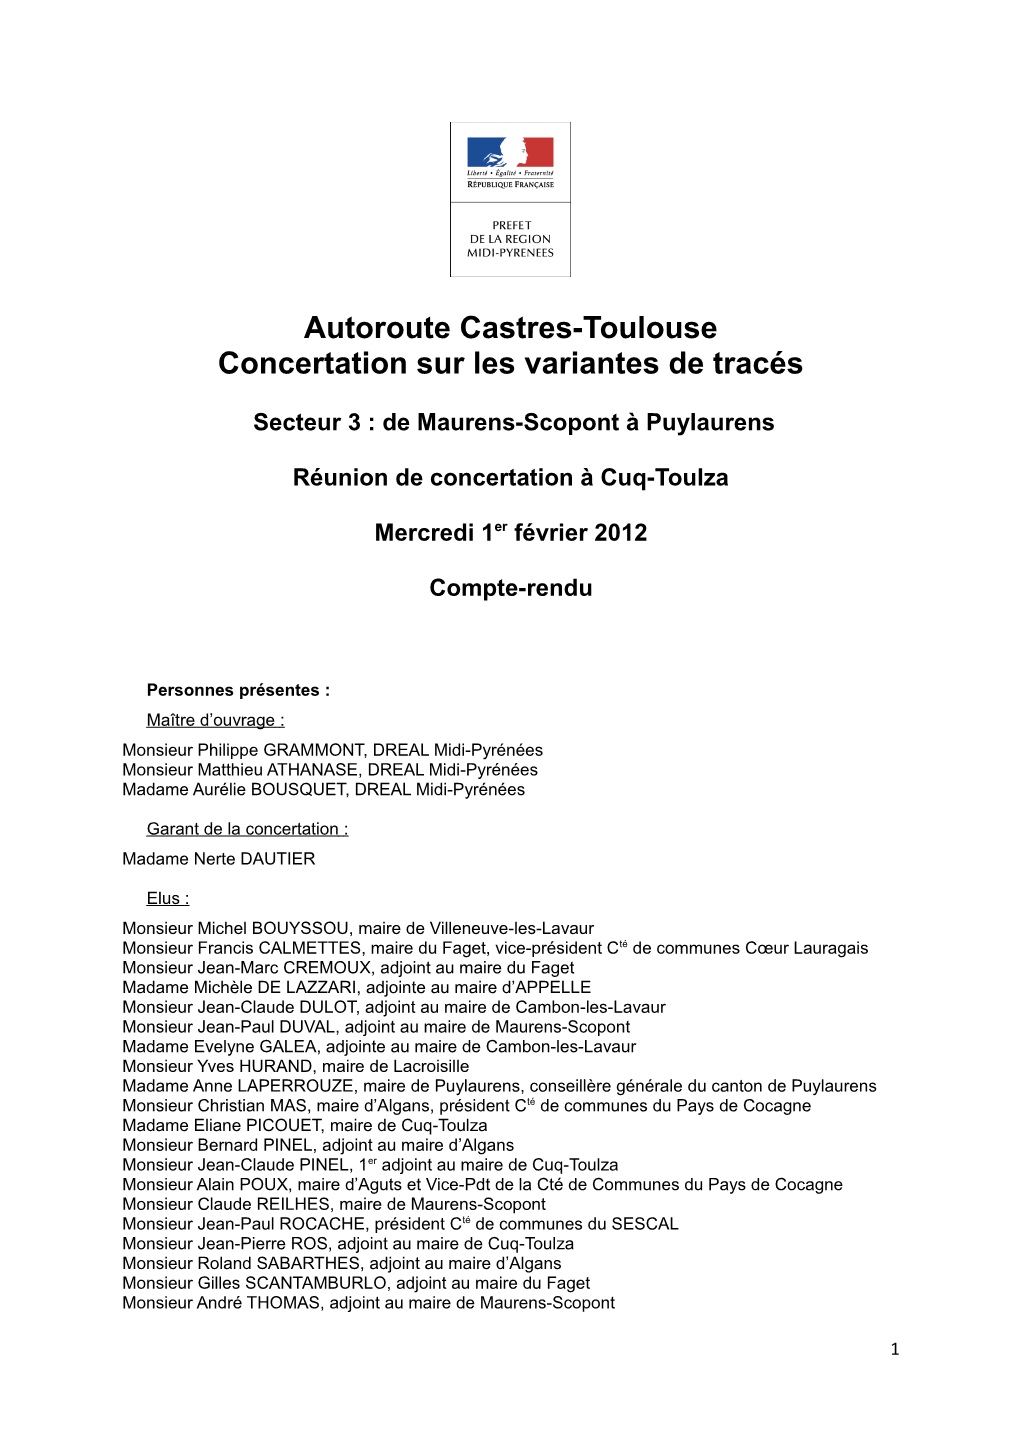 Autoroute Castres-Toulouse Concertation Sur Les Variantes De Tracés